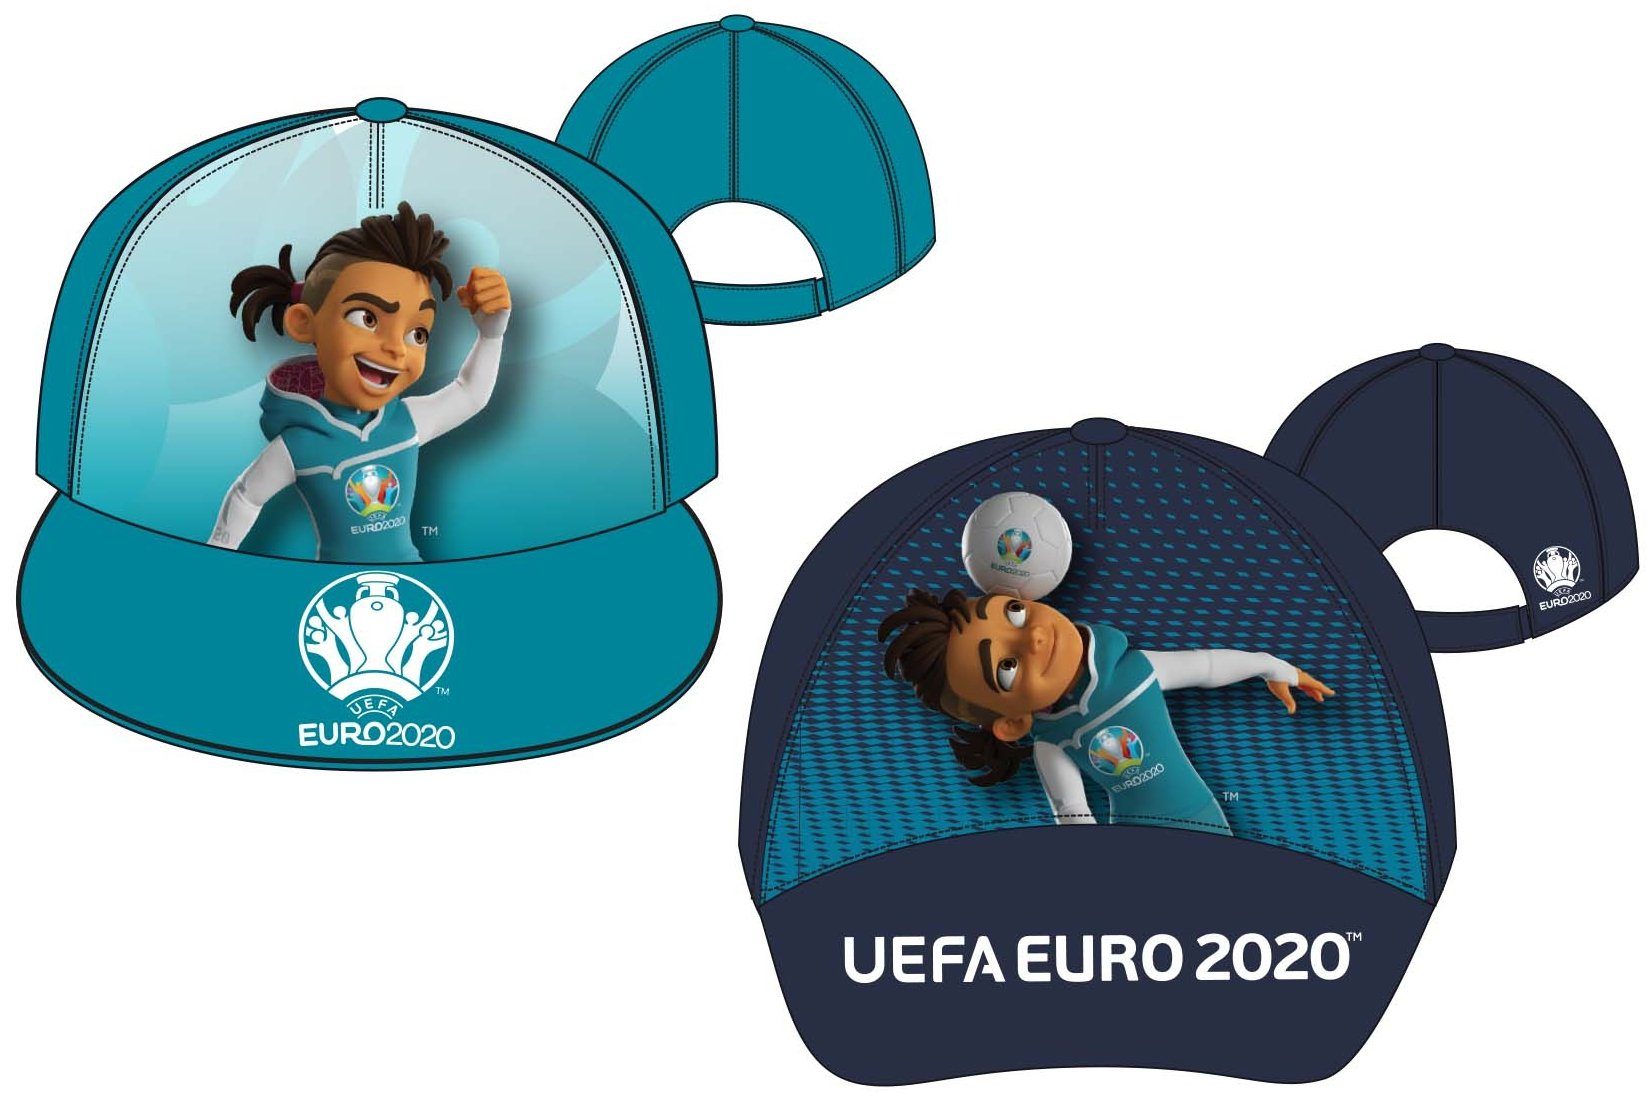 coole-fun-t-shirts Schirmmütze EURO 2020 / 2021 Kinder Basecap Schirmmütze Fußball EM Europameisterschaft Base und Snapback Jungen + Mädchen für Kita, Schule, Einschulung Gr.52 + 54 türkis